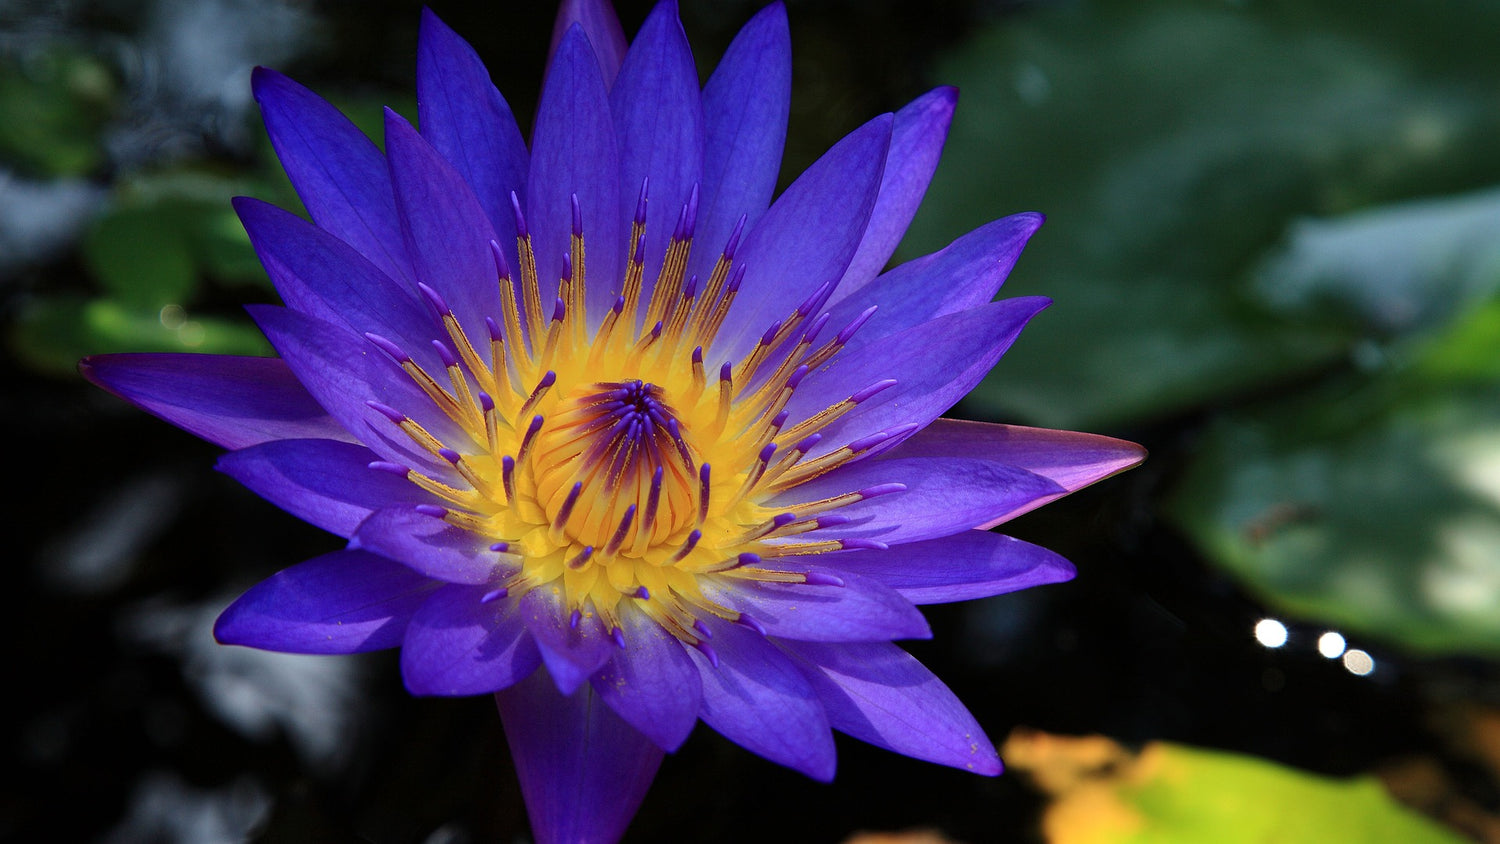 Herkunft & Wirkung von Blauen Lotus – Blue-Lotus Shop